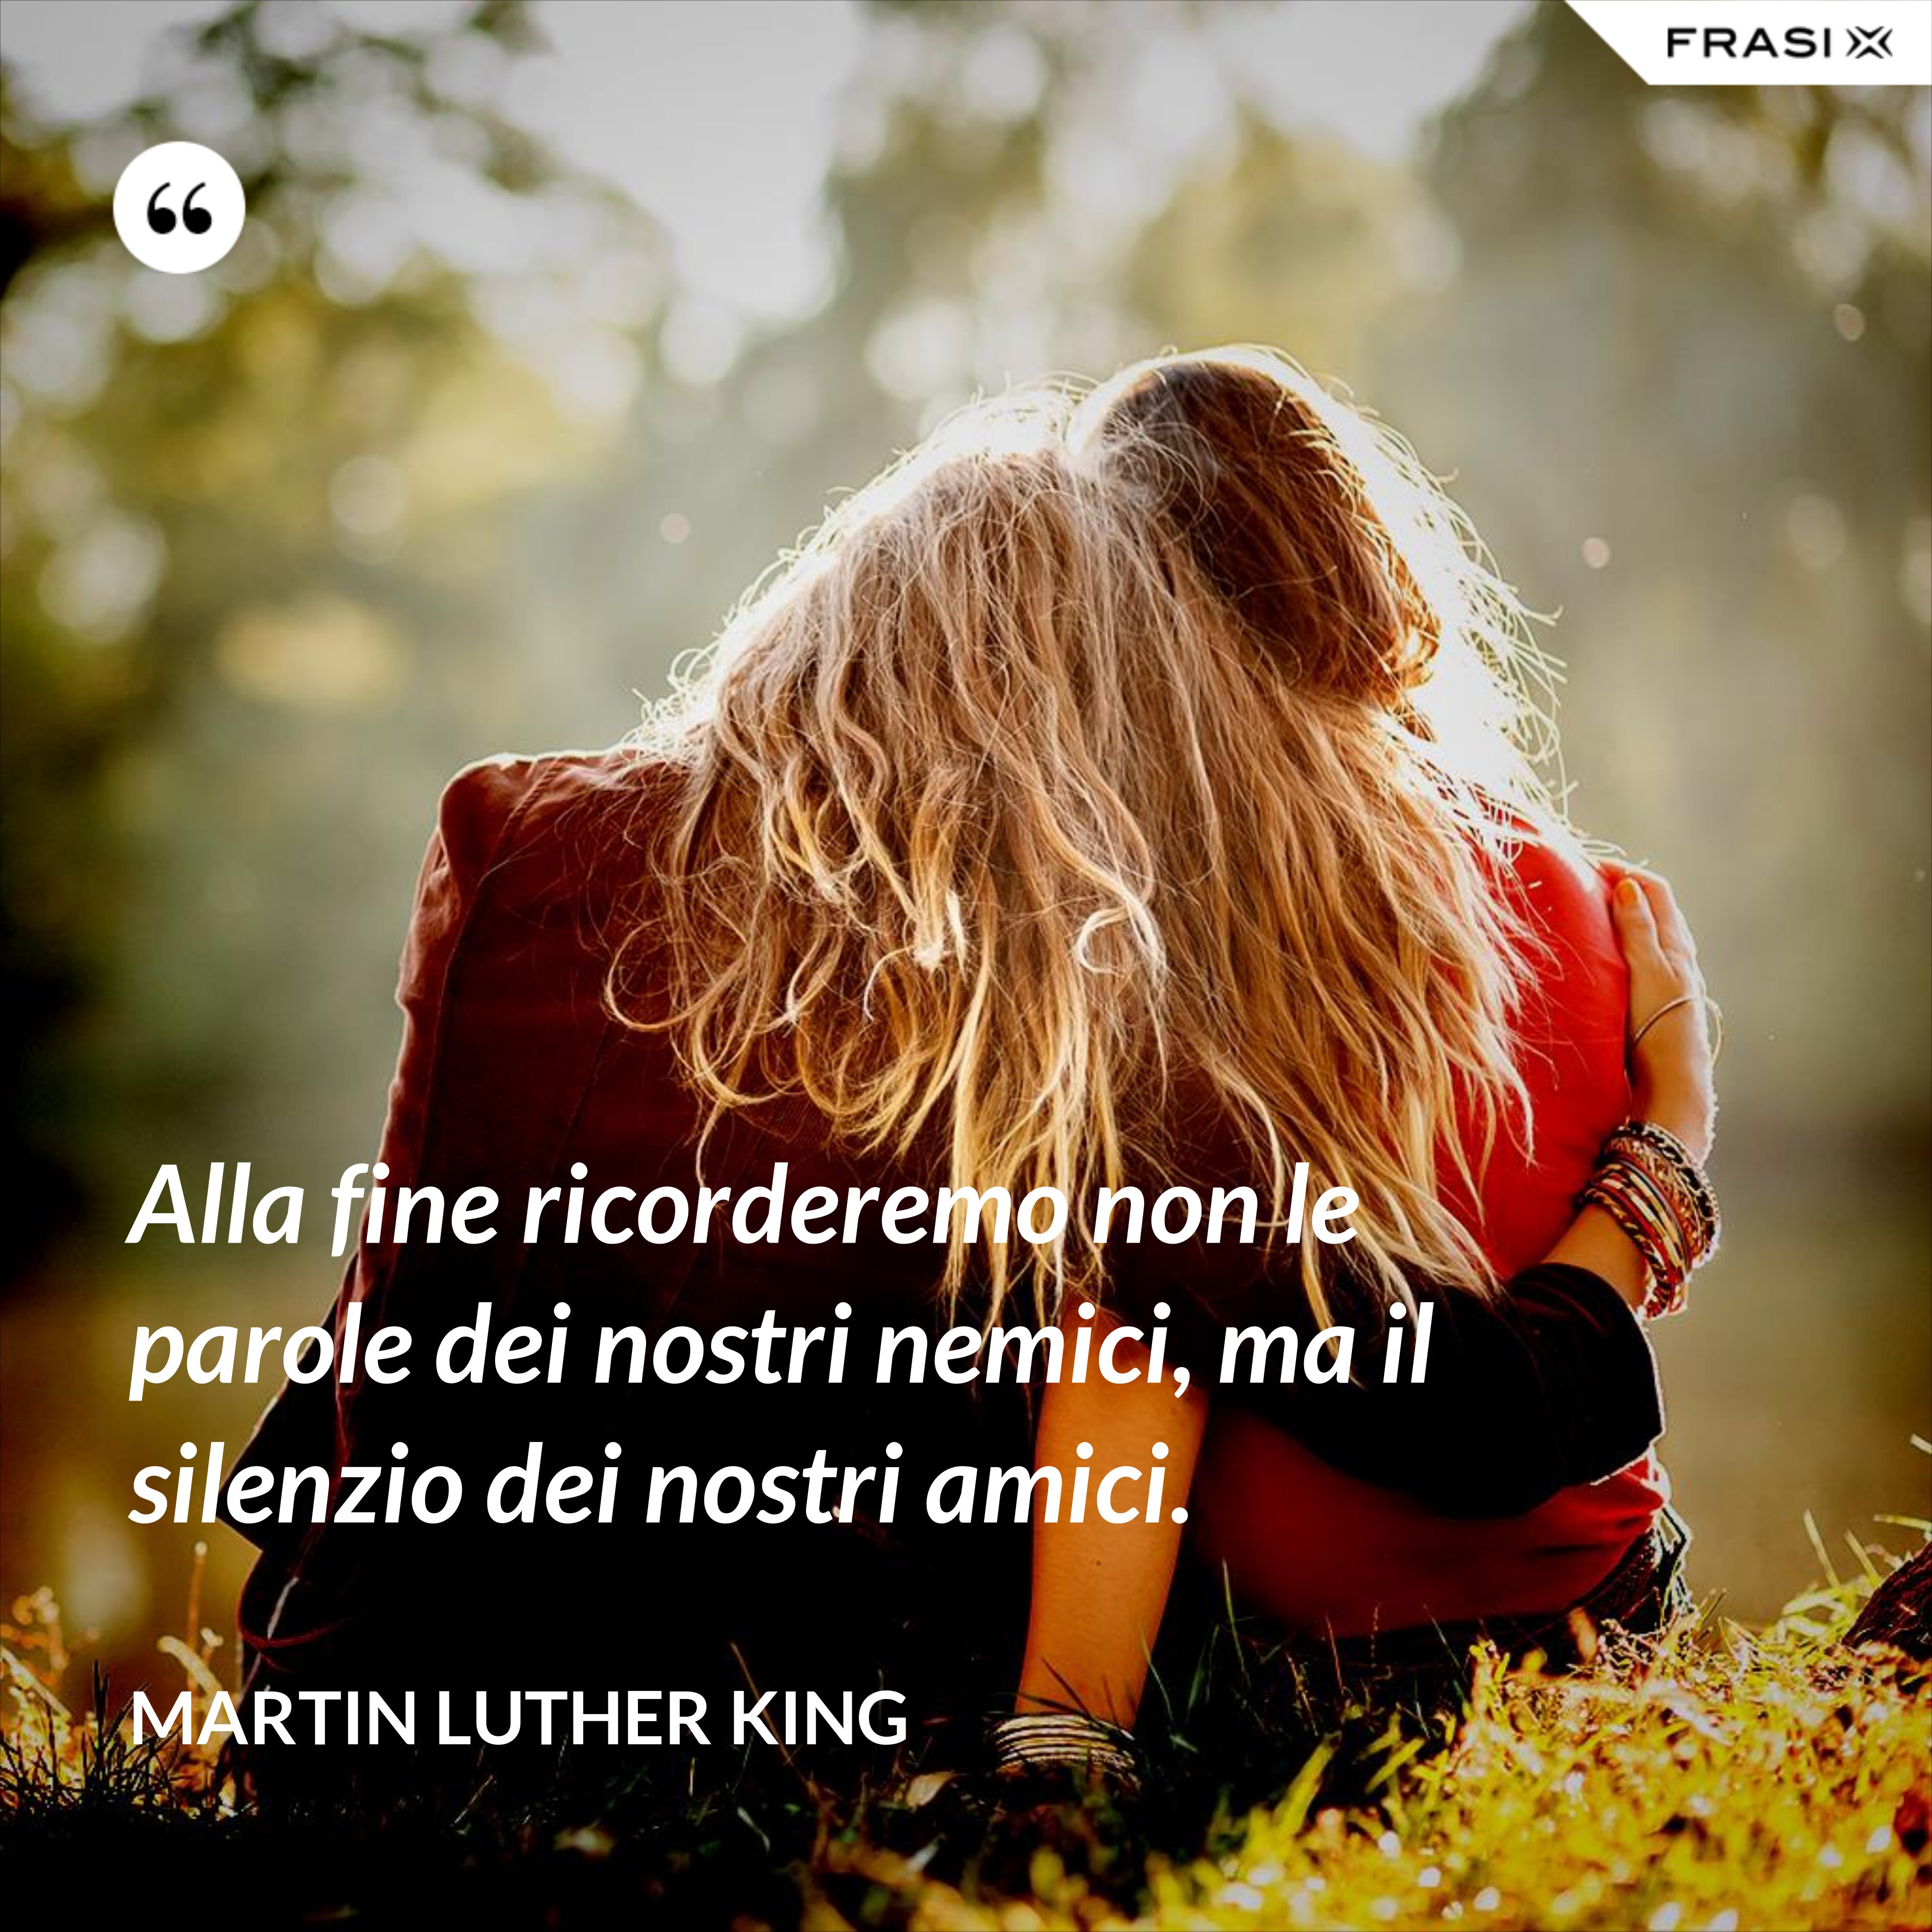 Alla fine ricorderemo non le parole dei nostri nemici, ma il silenzio dei nostri amici. - Martin Luther King